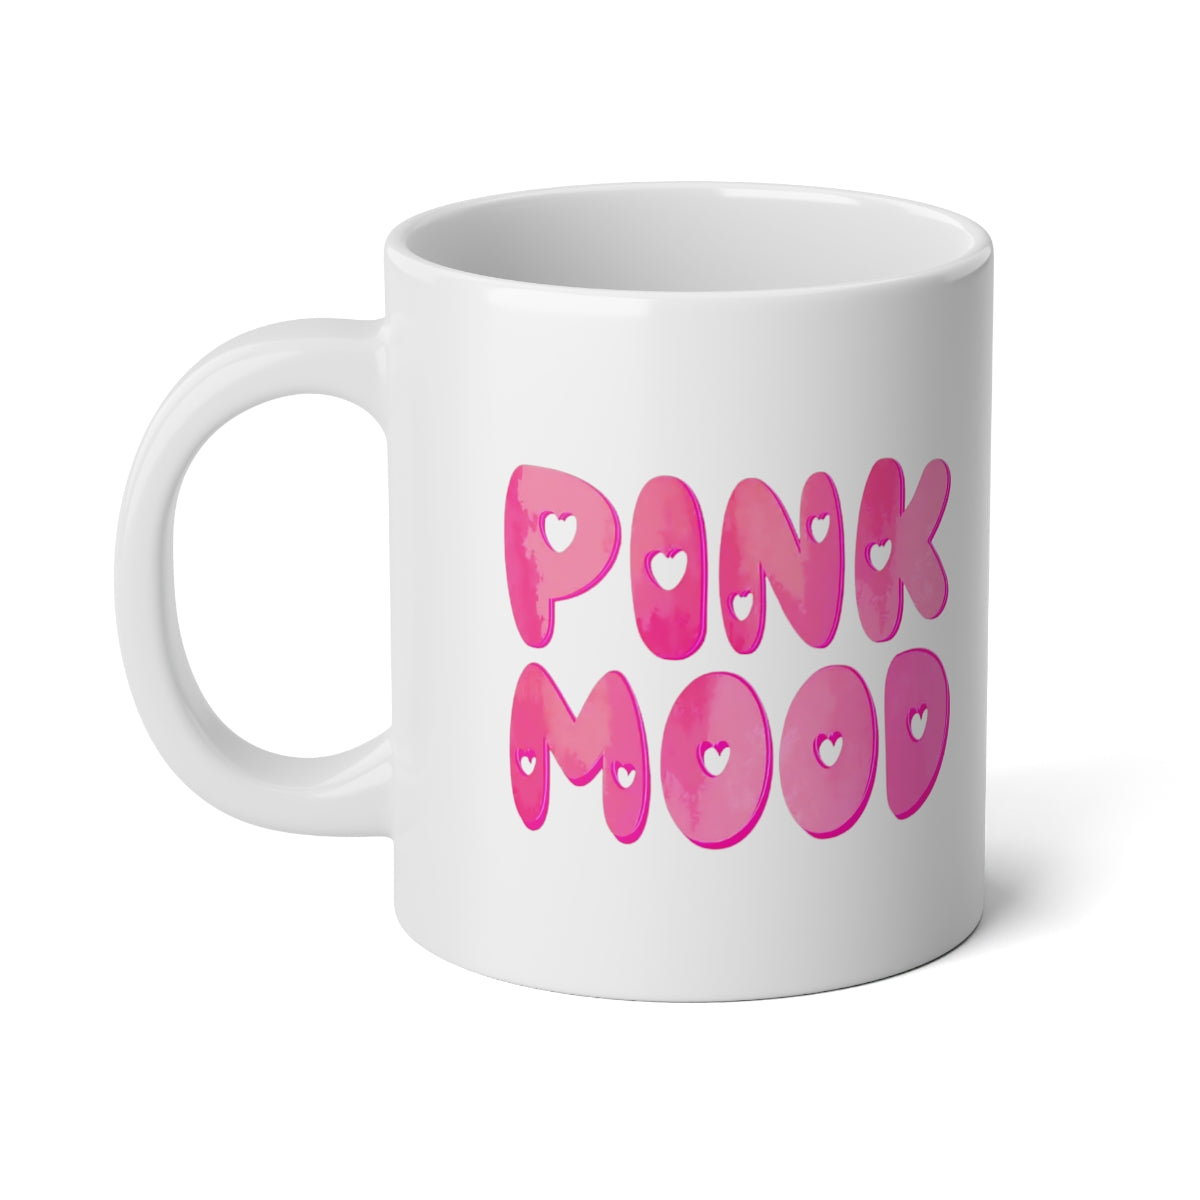 Pink Mood Jumbo Mug, 20oz